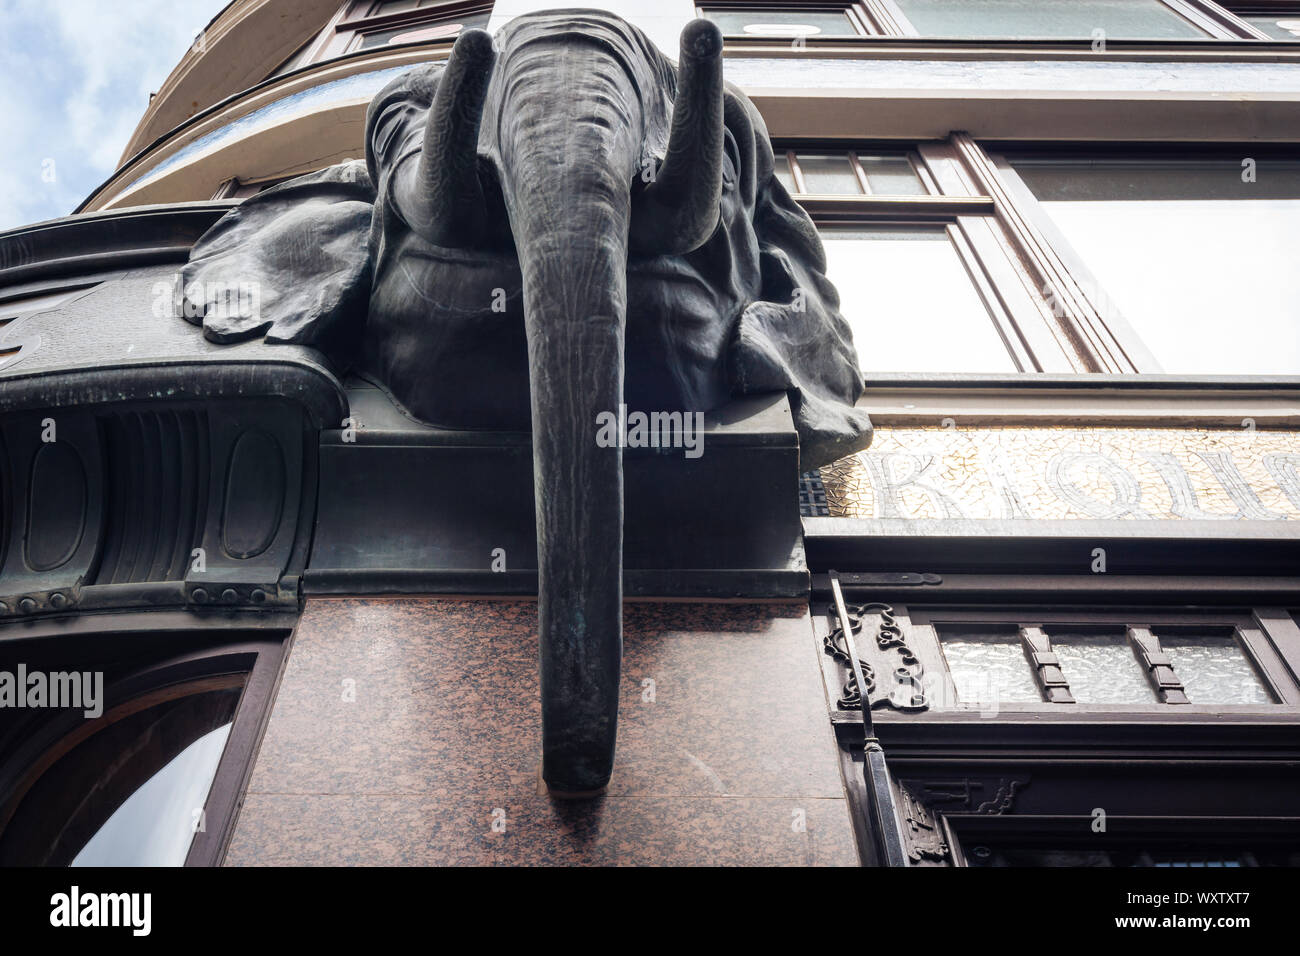 Leipzig Germania - 11 Luglio 2018 - Vista dal basso verso l'alto sulla testa di un elefante presso il Cafe Riquet a Leipzig Foto Stock